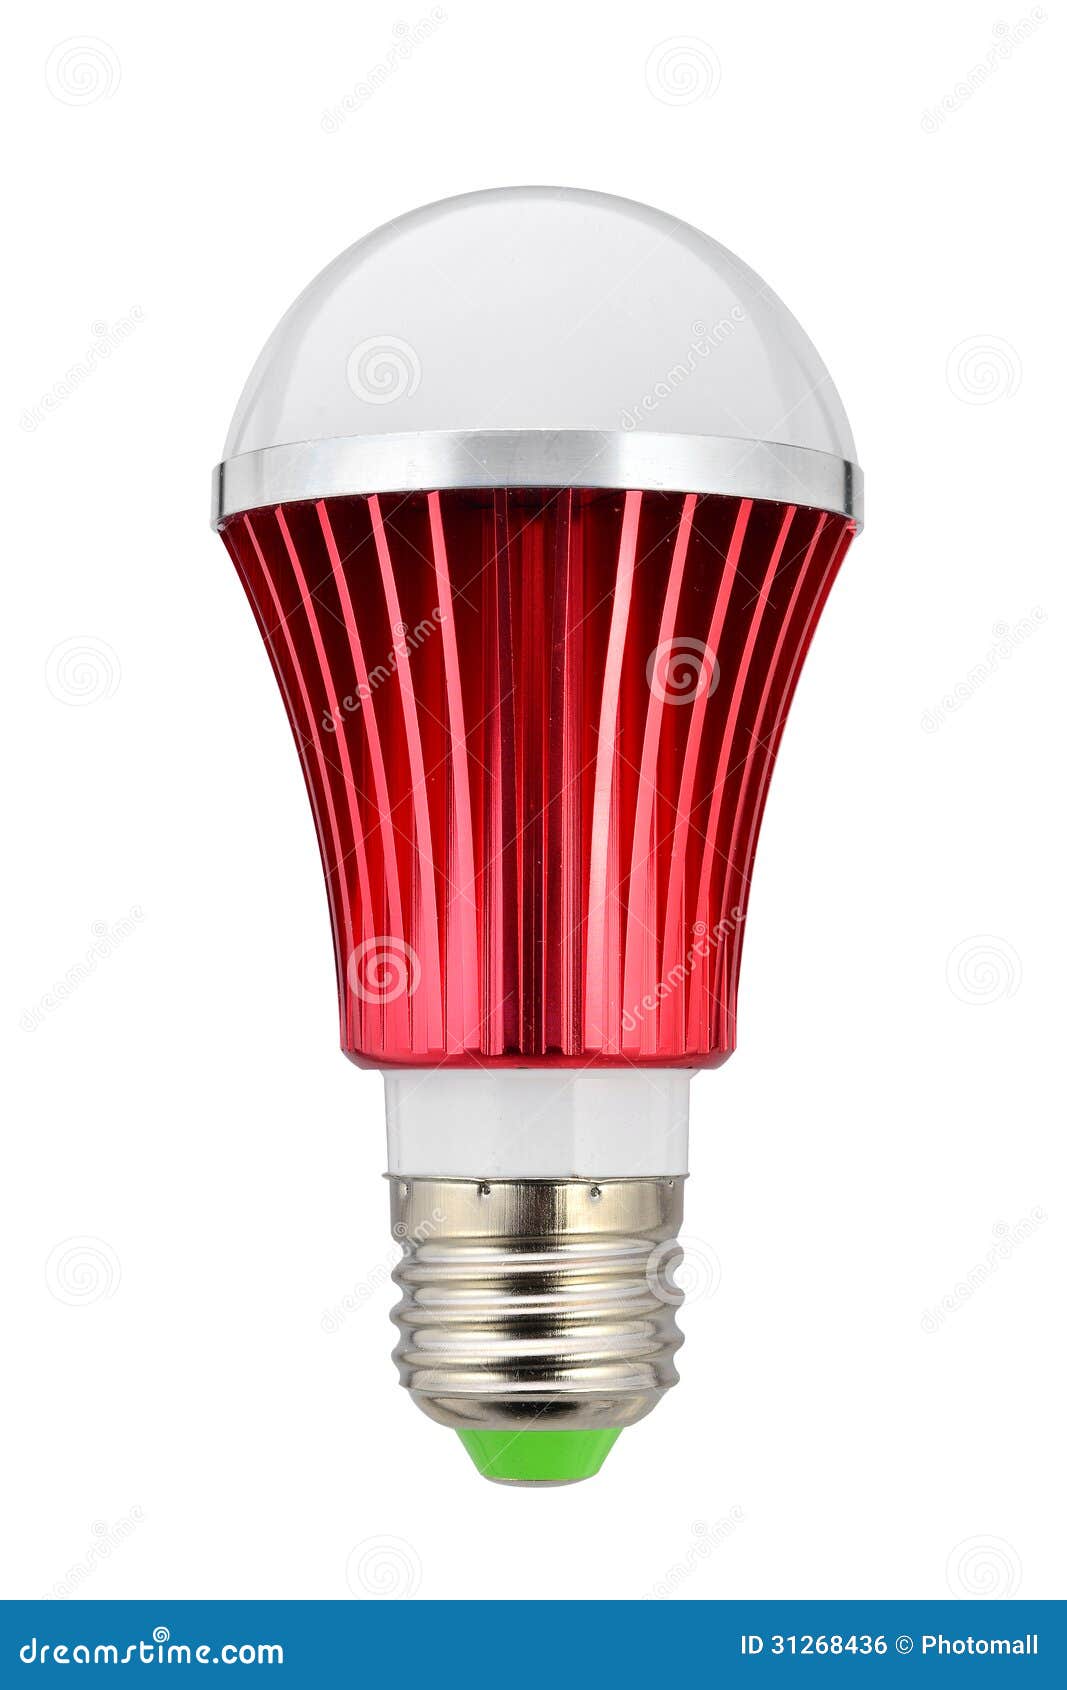 Led Bulb,lamp Bulb,light Bulb,led Light,led Lamp,led Lighting,new